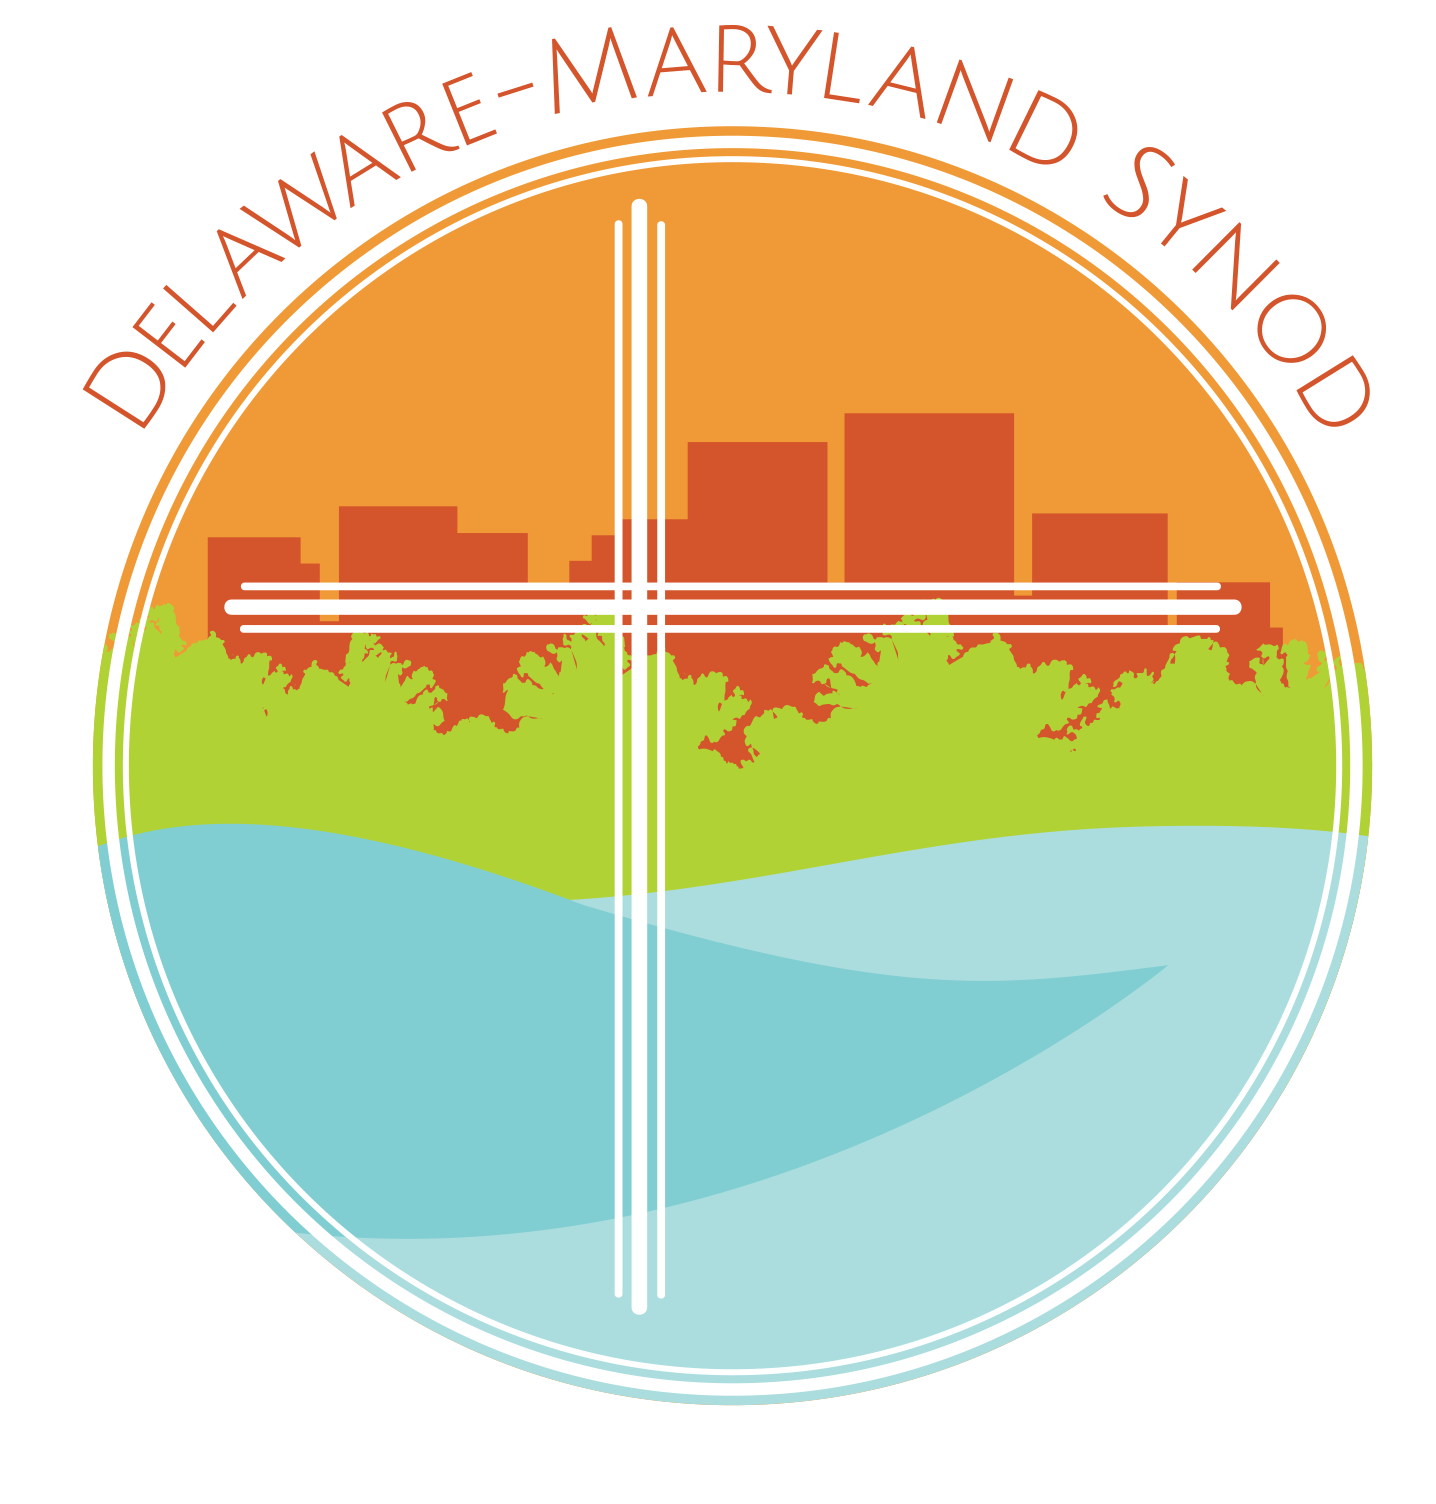 Delaware-Maryland Synod